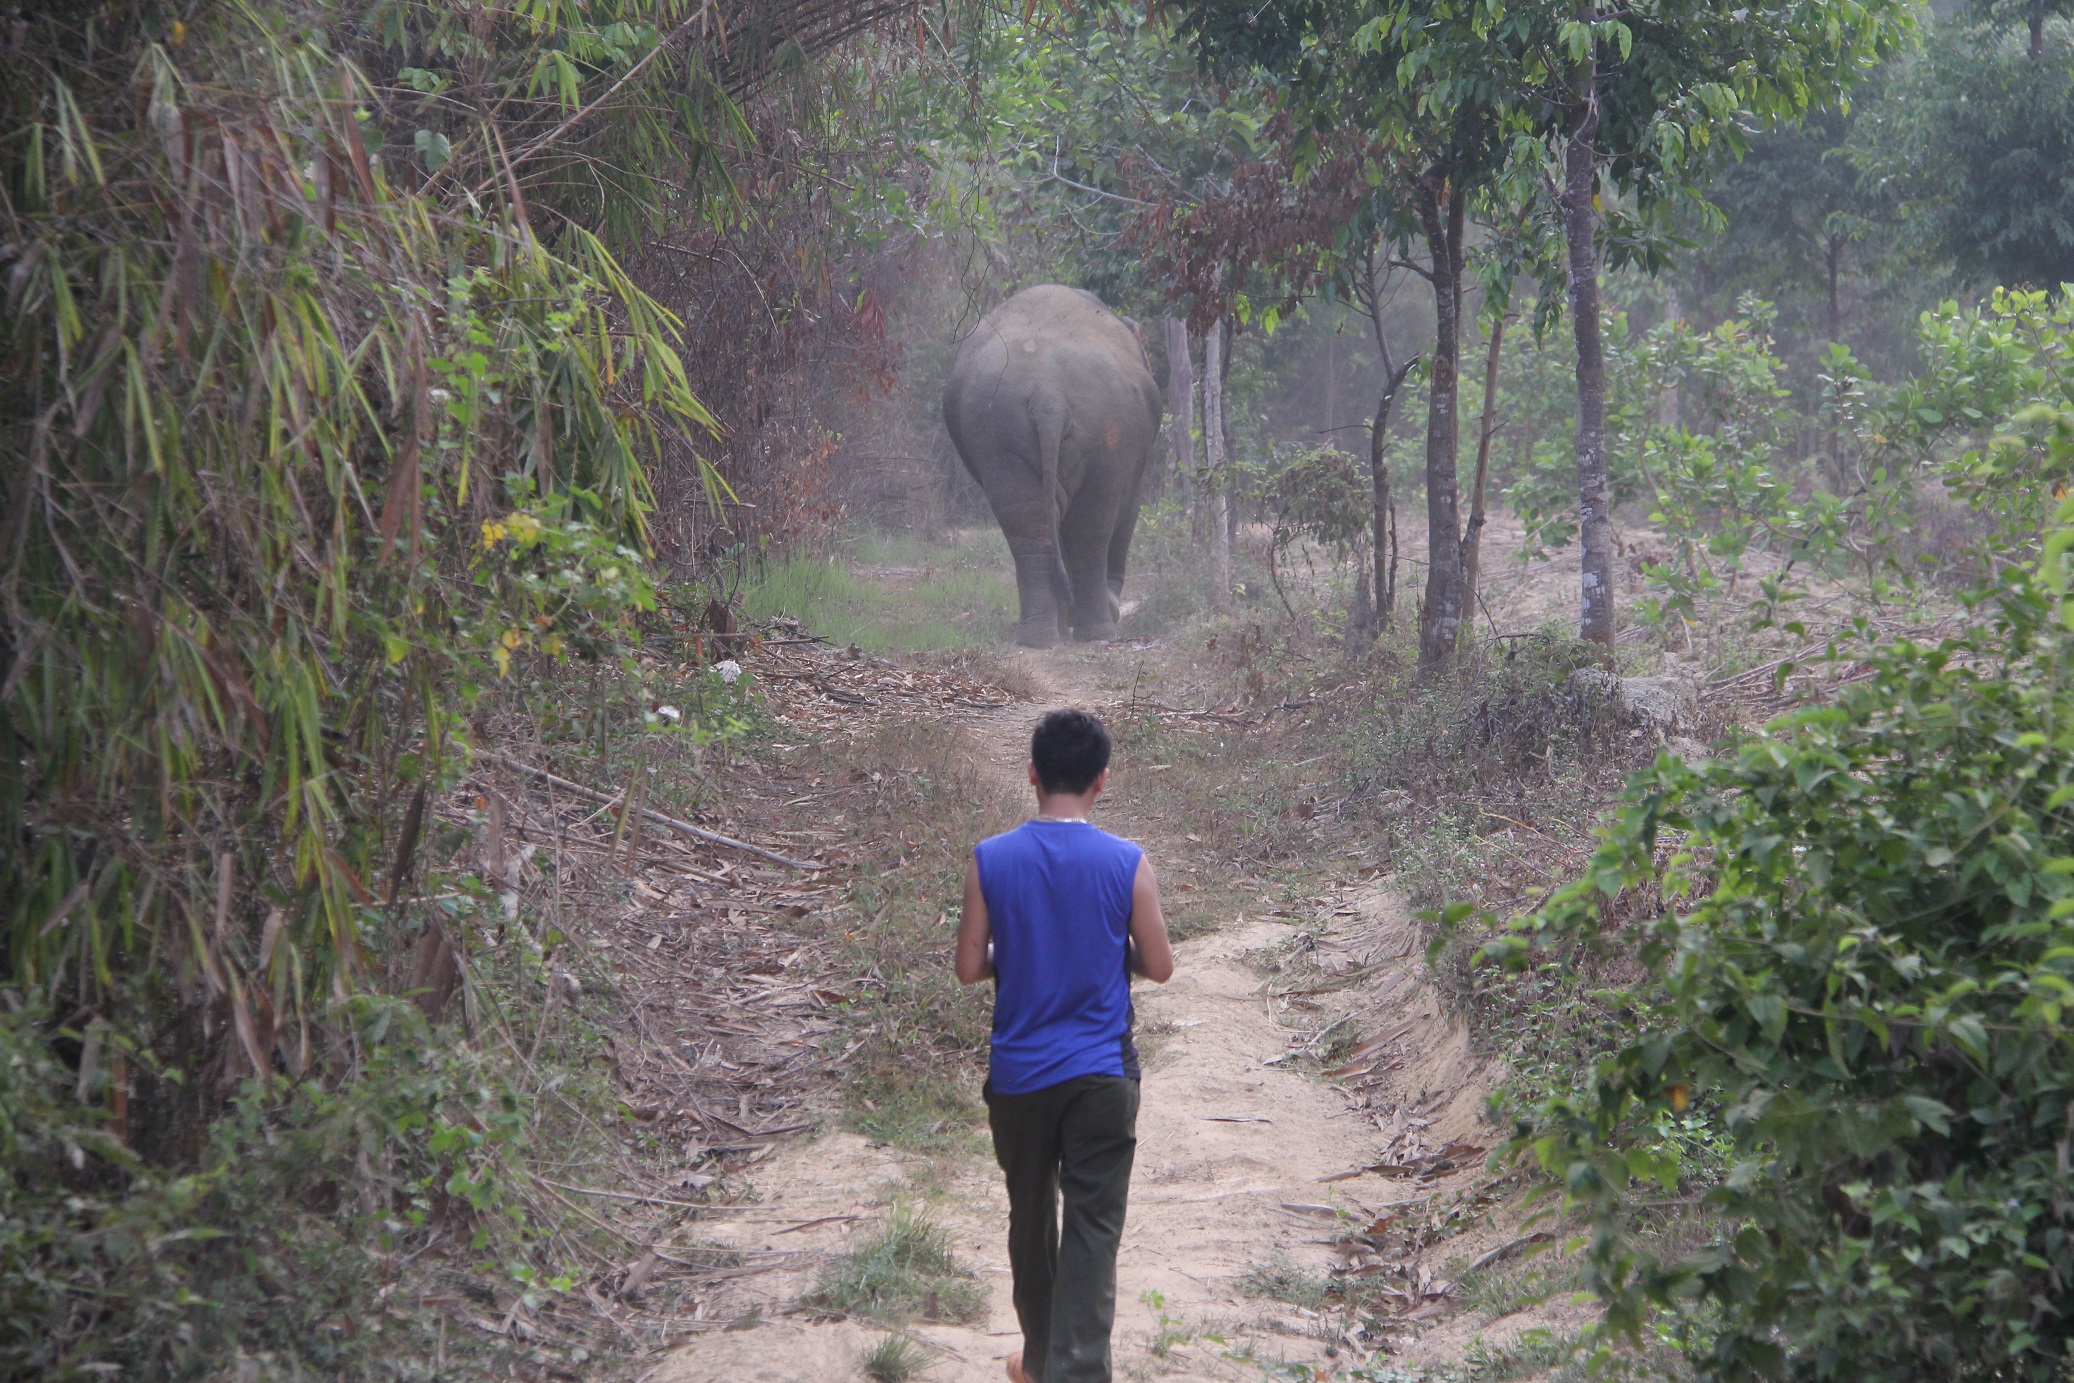 Đang bám theo voi ngà lệch để “xin” chụp hình thì bất ngờ voi quay đầu rượt đuổi - Ảnh: Lê Lâm